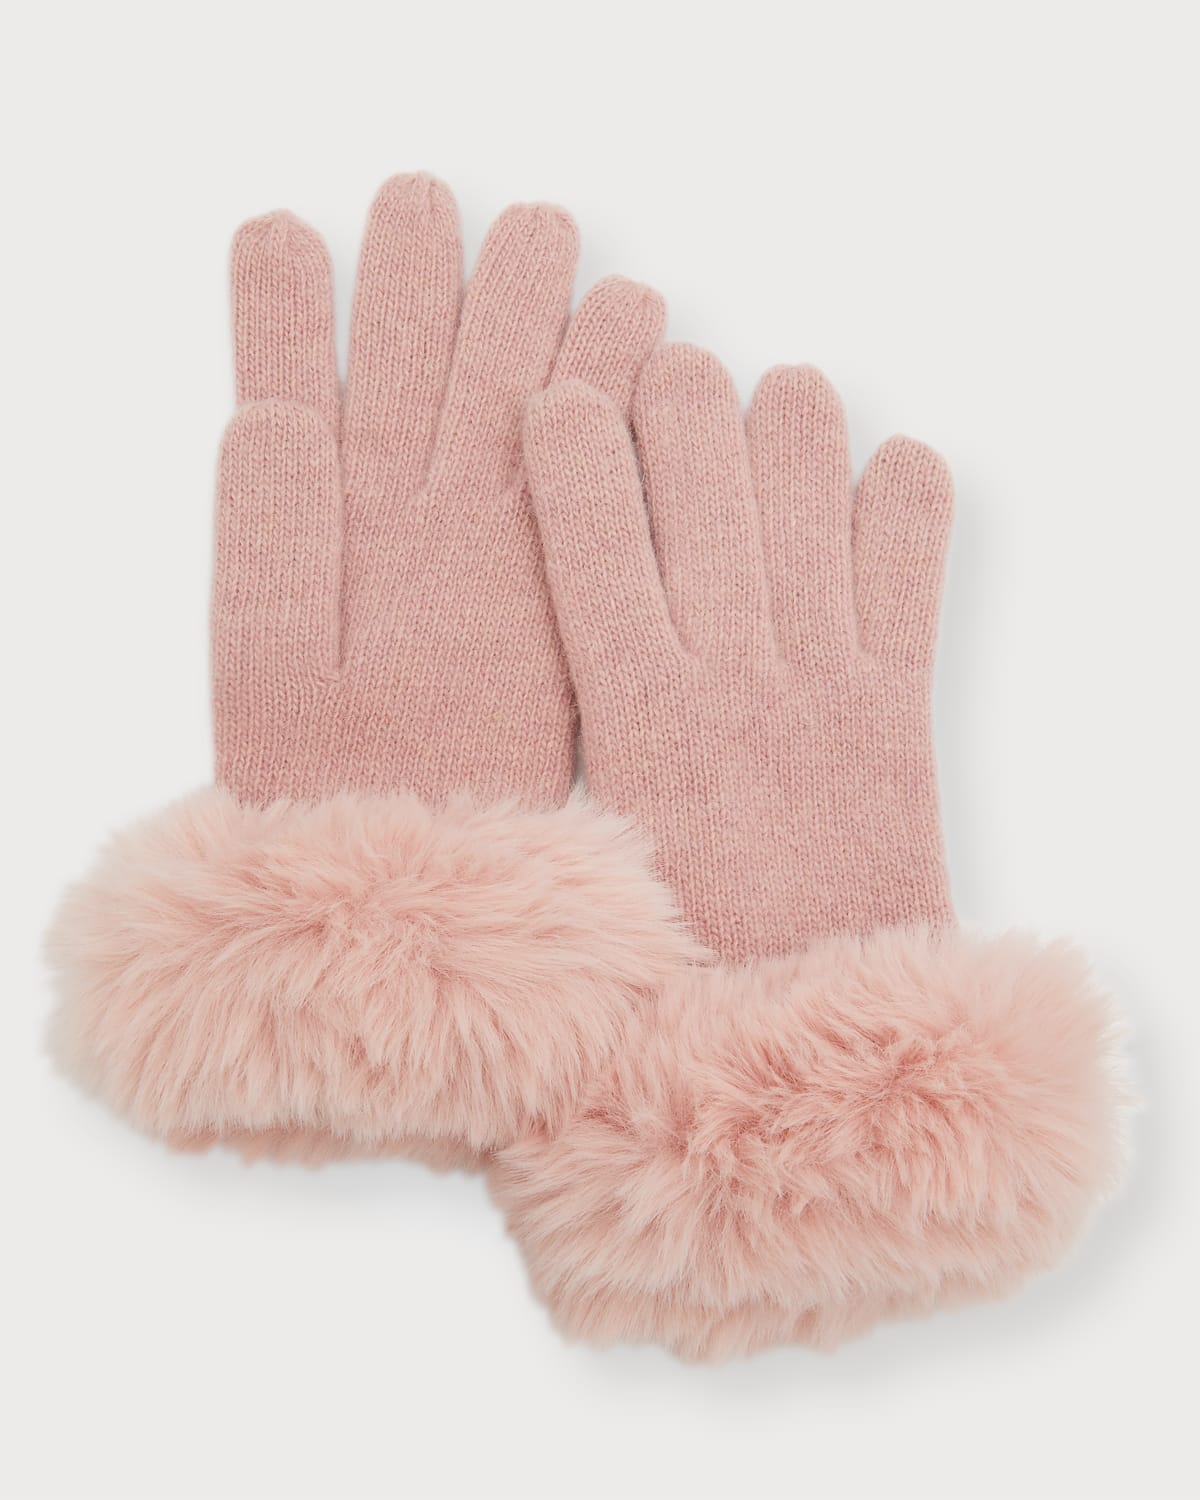 Adrienne Landau Knit Gloves W/ Faux Fur Cuffs In Gray